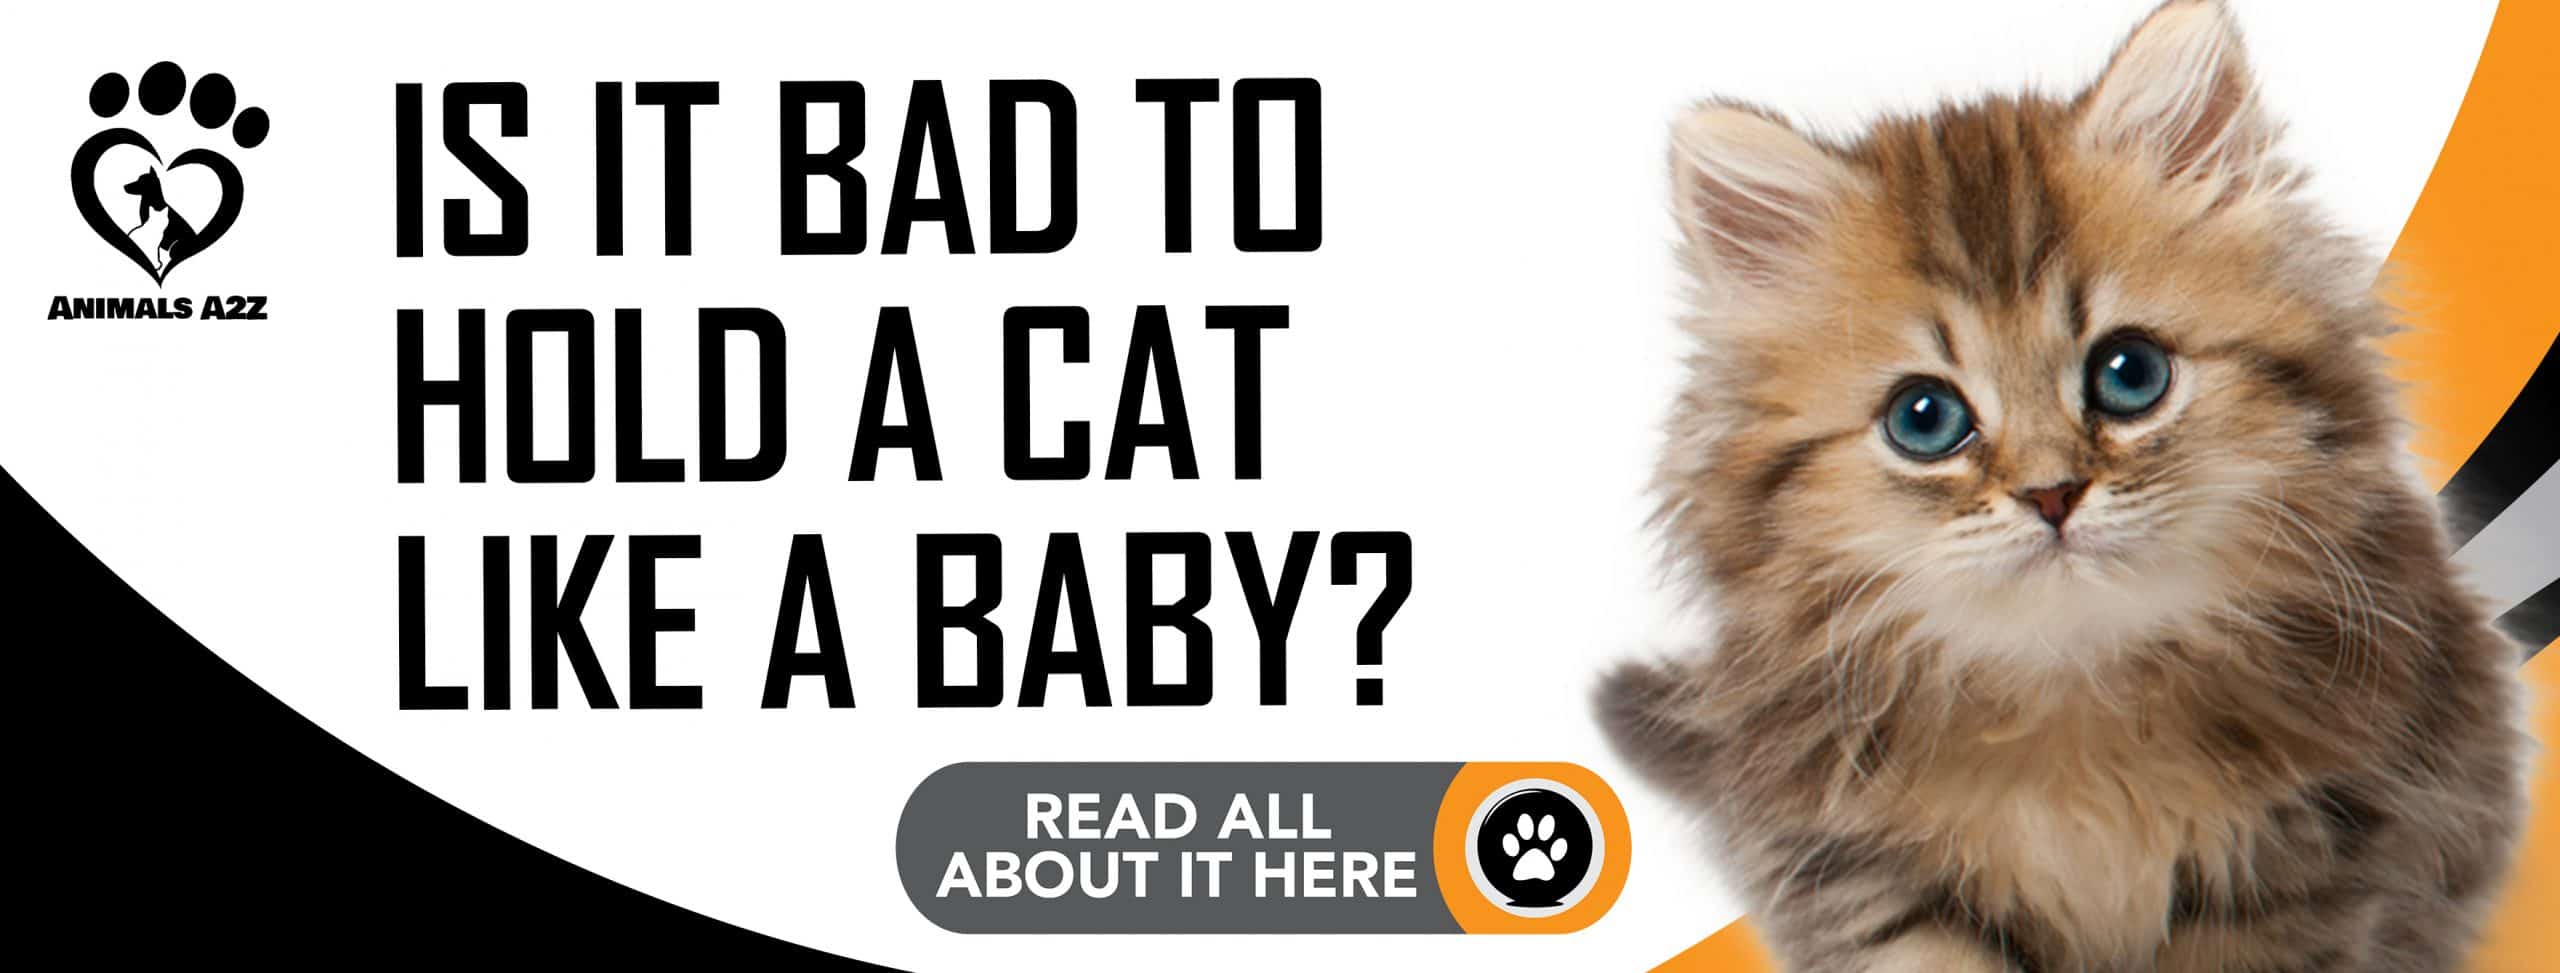 Ist es schlecht, eine Katze wie ein Baby zu halten?